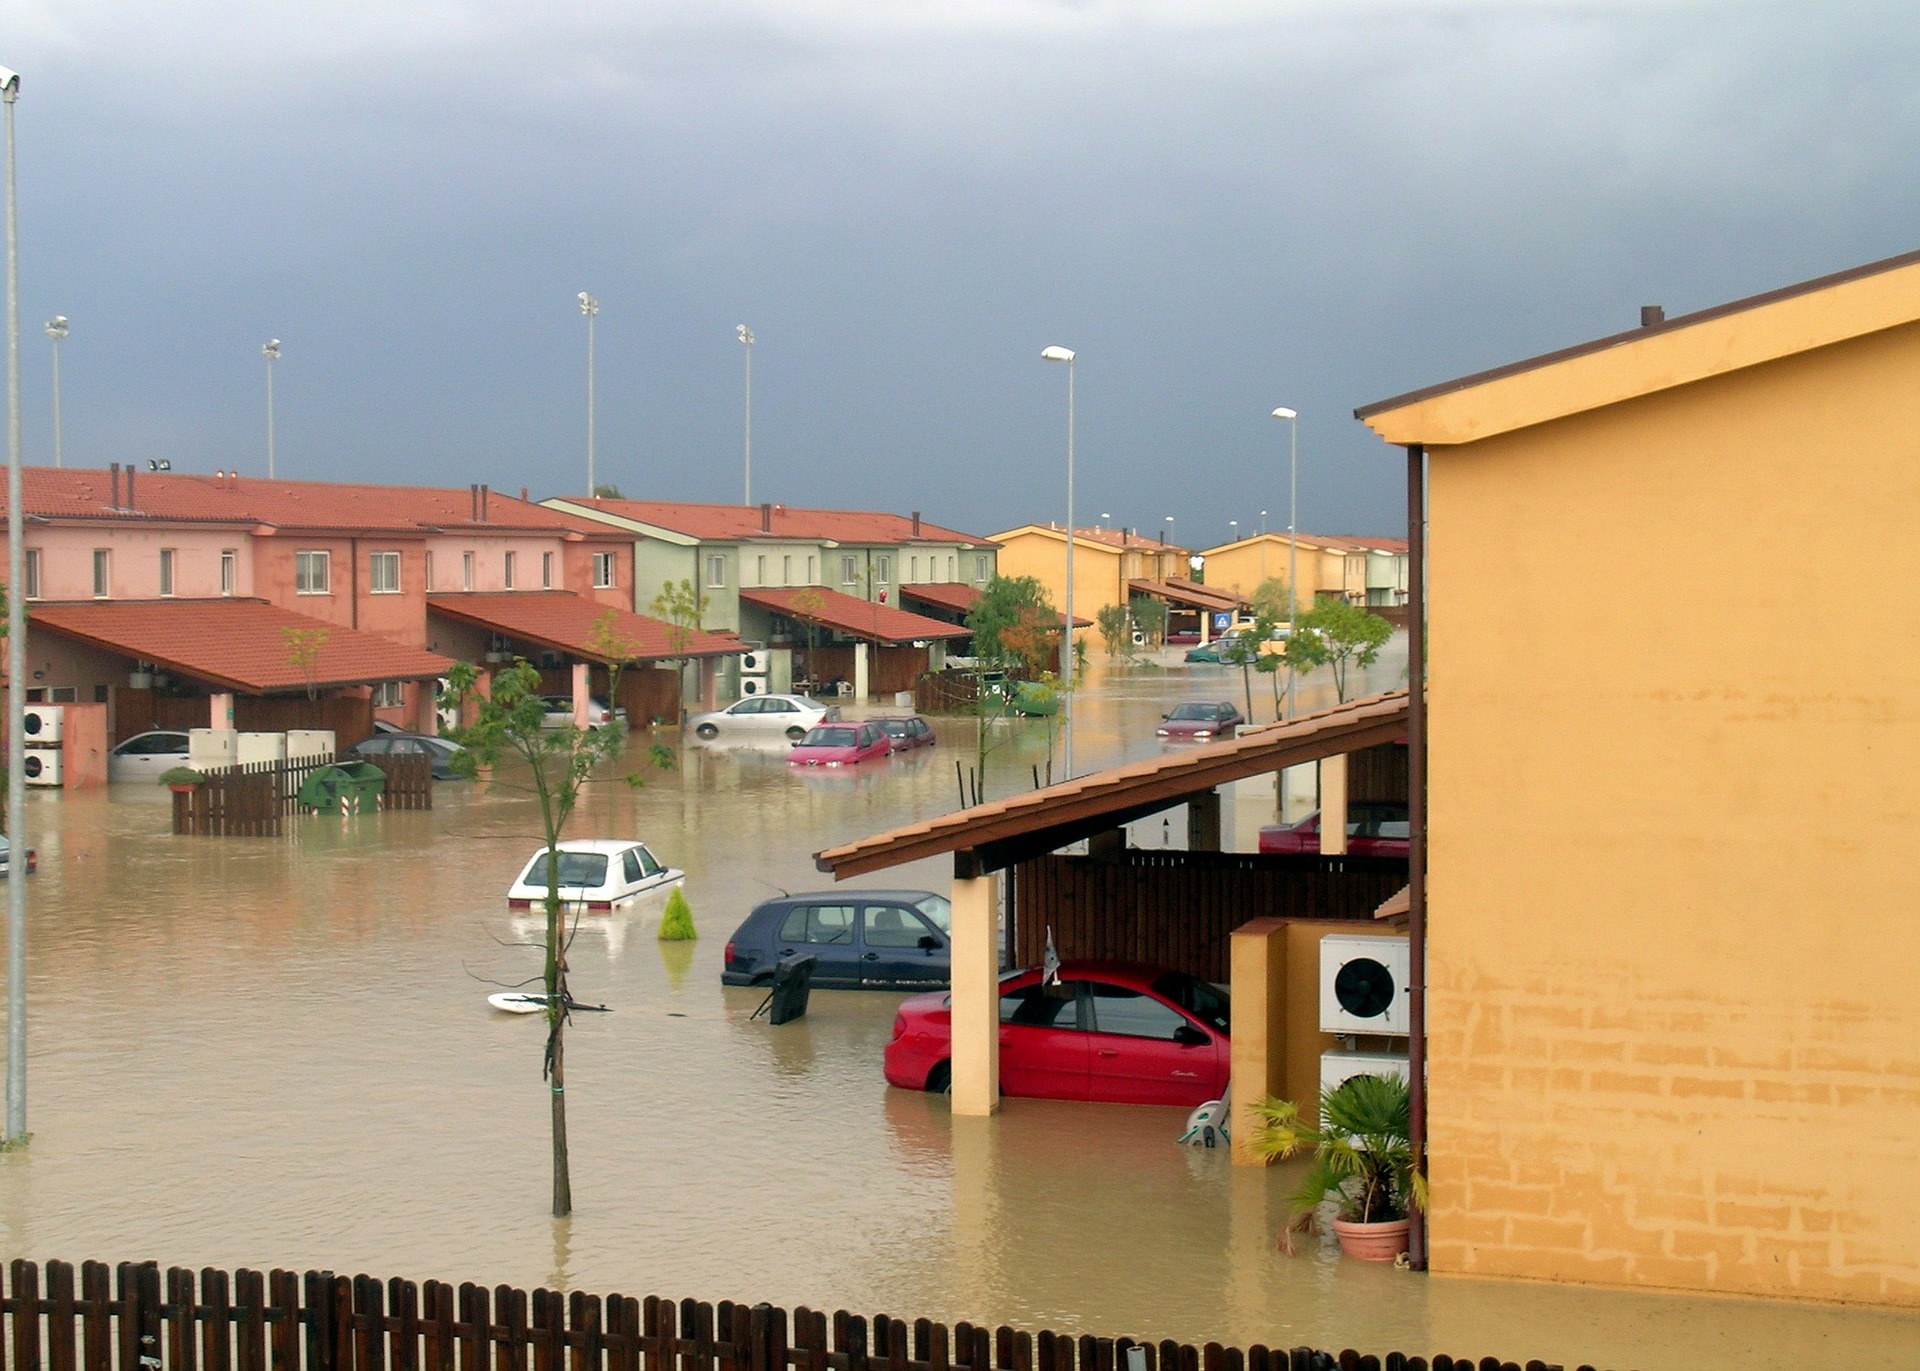 Flooding in neighborhoods